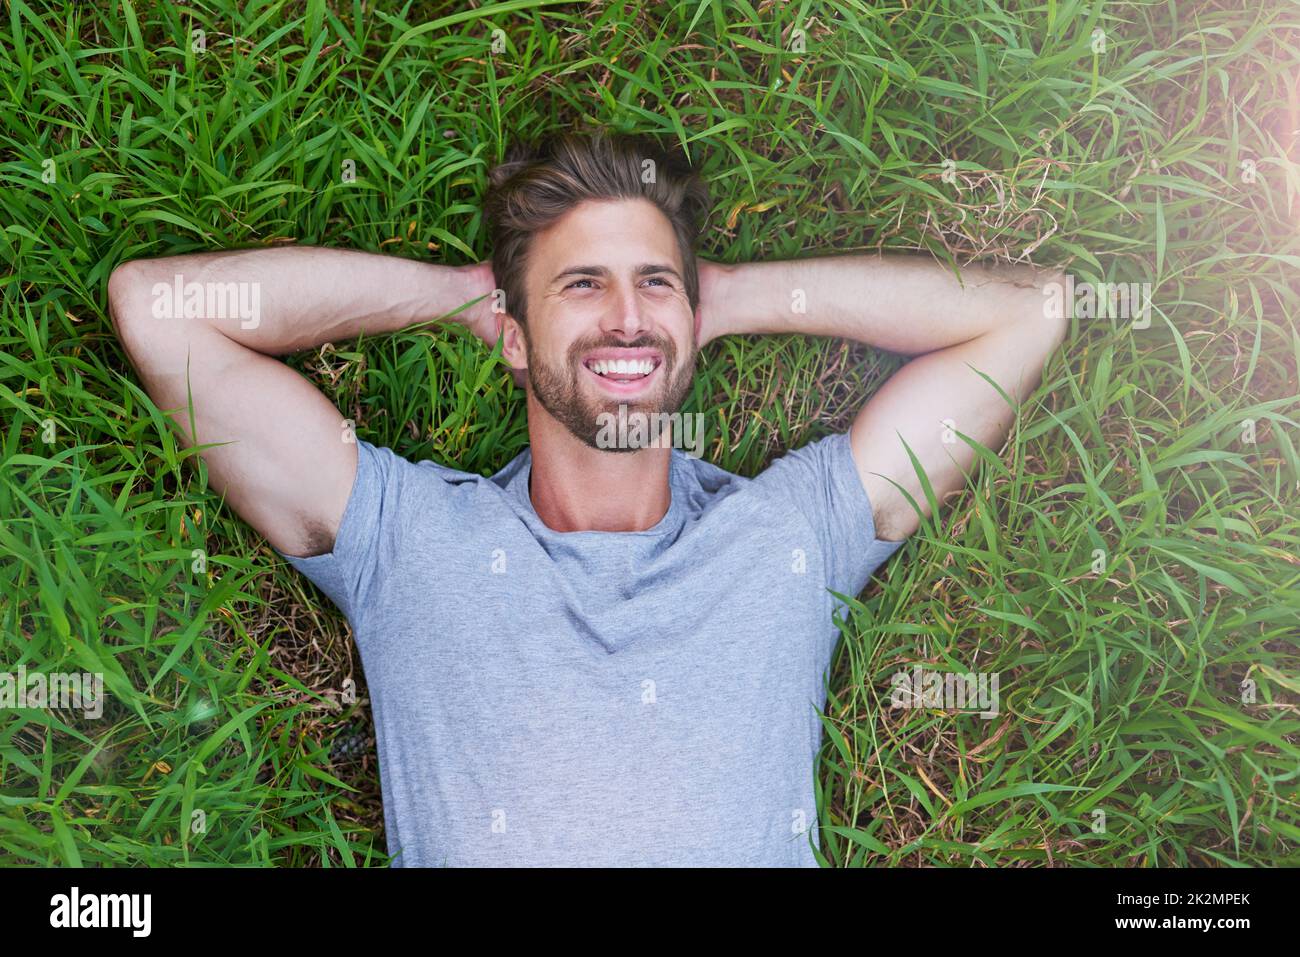 L'herbe est plus verte de l'autre côté. Photo en grand angle d'un jeune homme allongé sur l'herbe avec ses mains derrière sa tête. Banque D'Images